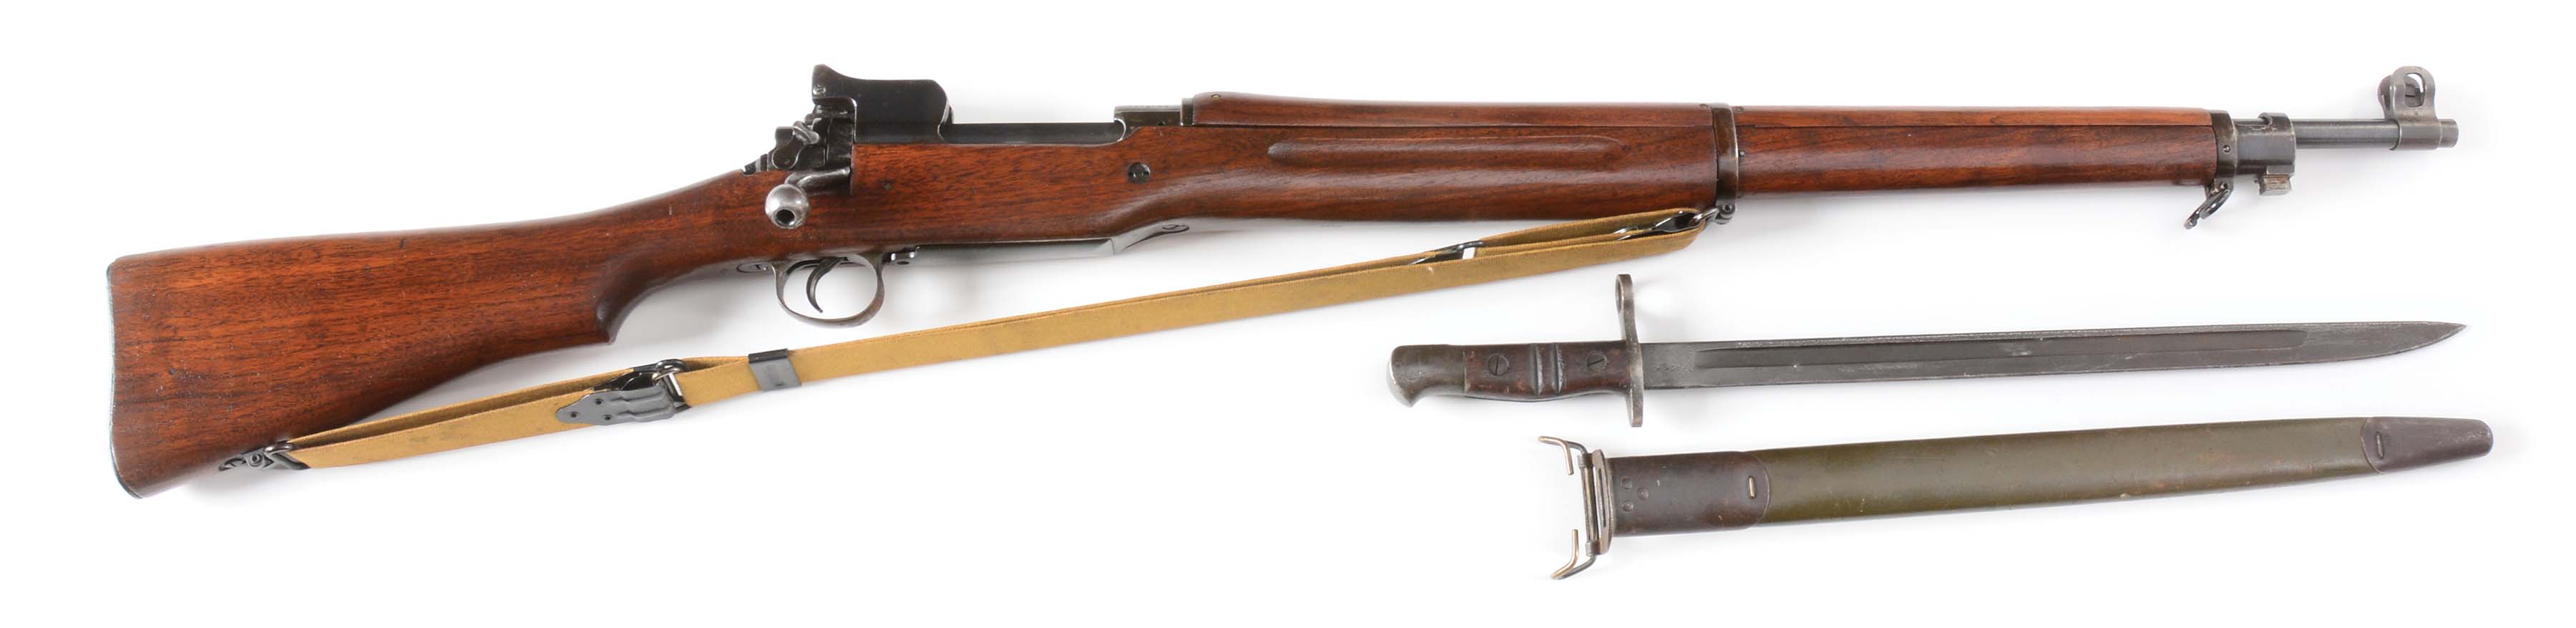 (C) world war I usgi eddystone model 1917 enfield rifle 1918 with bayonet. 